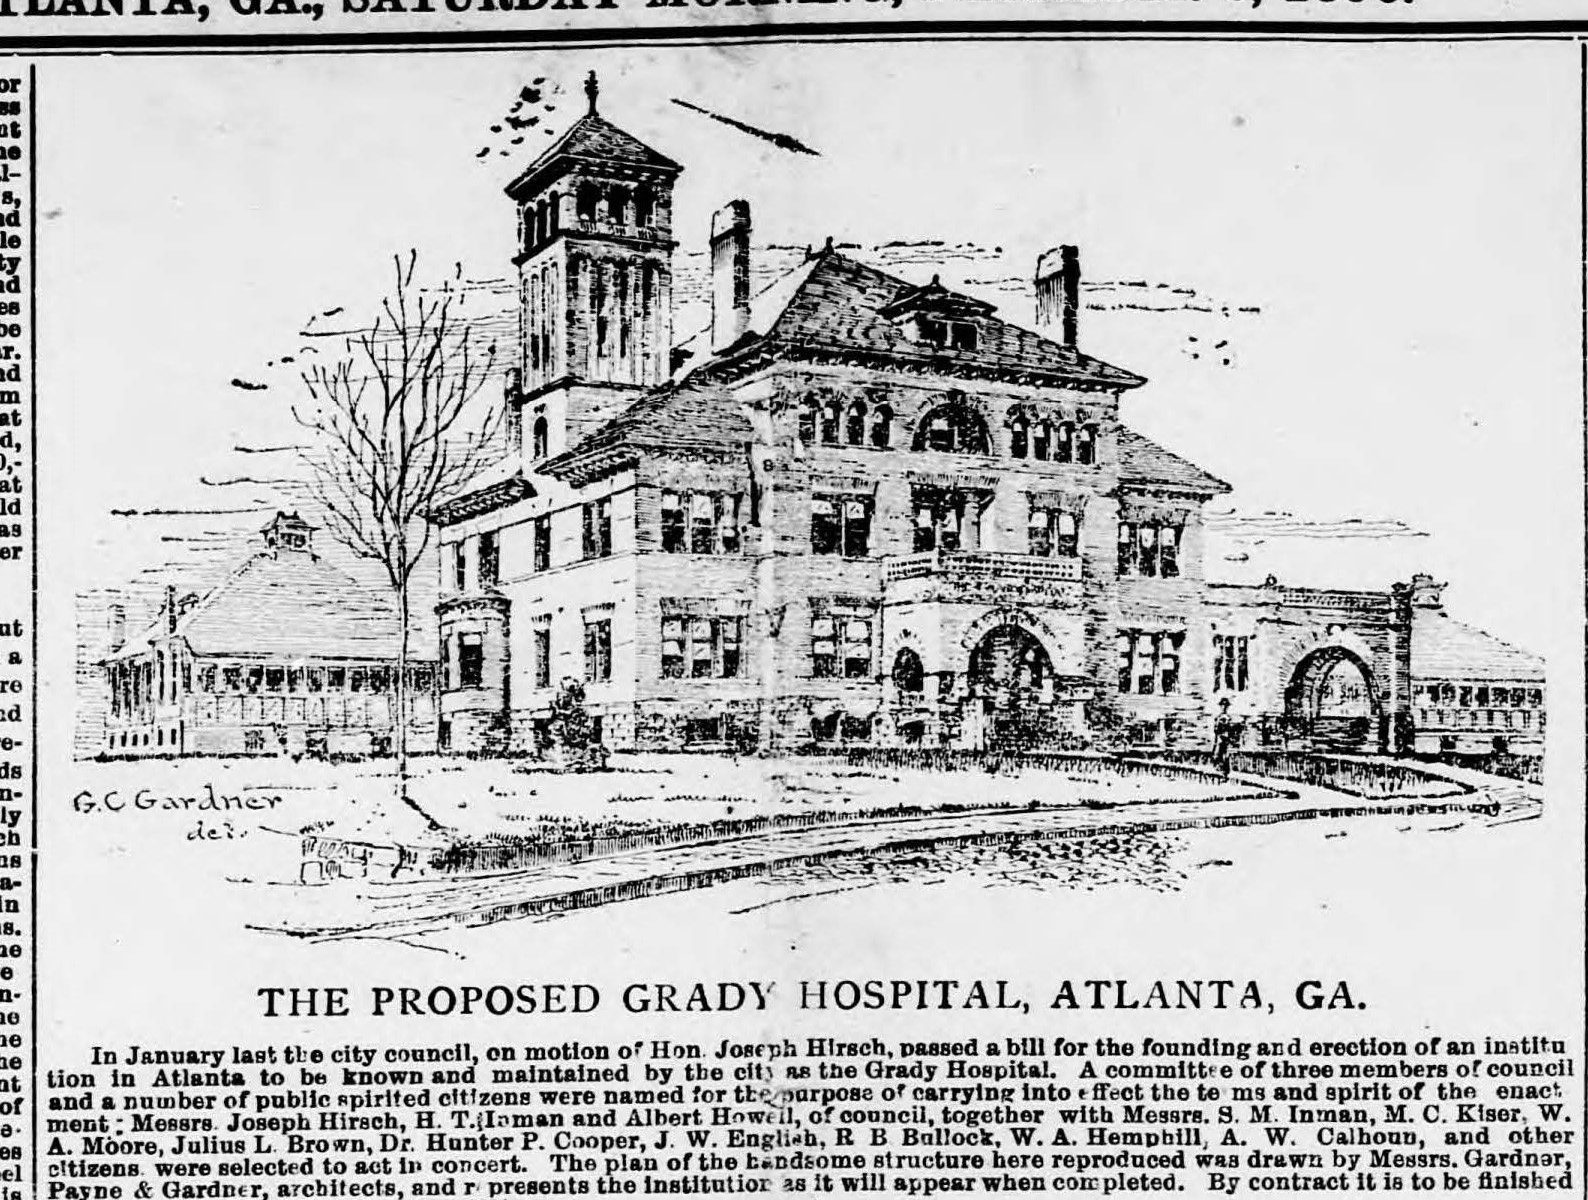 Illustration of Grady Hospital